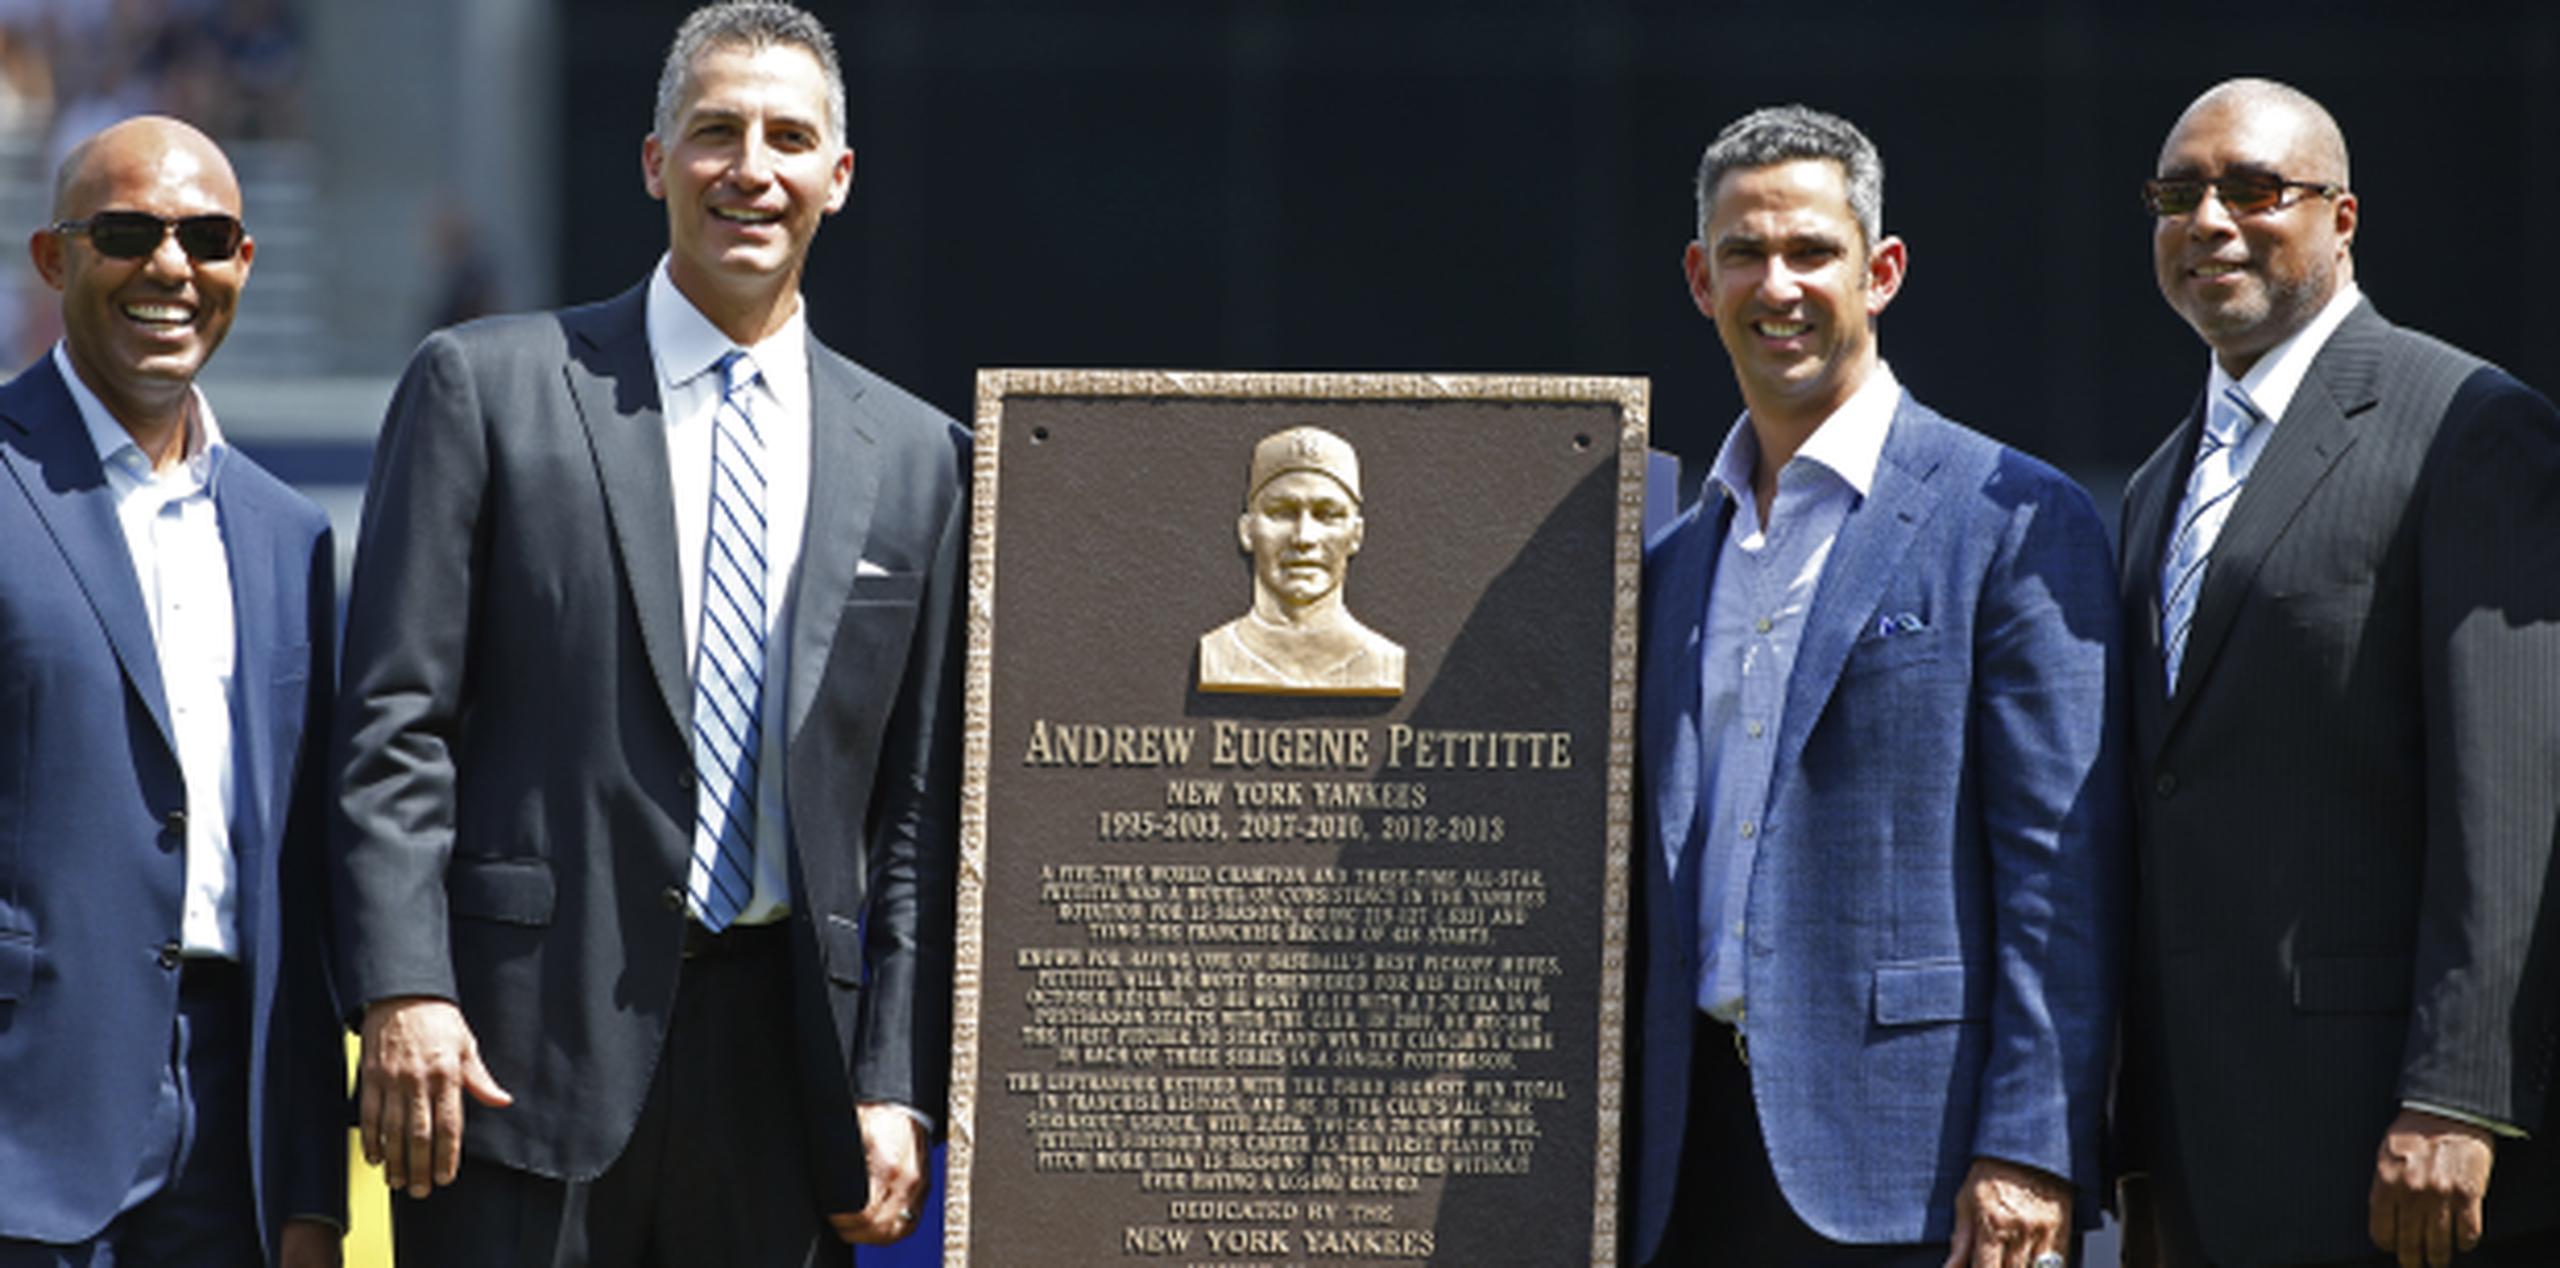 Cuatro de las numerosas glorias de los Yankees que participaron de la ceremonia hoy: el panameño Mariano Rivera, el homenajeado Pettitte, y los boricuas Jorge Posada y Bernie Williams. (AP)